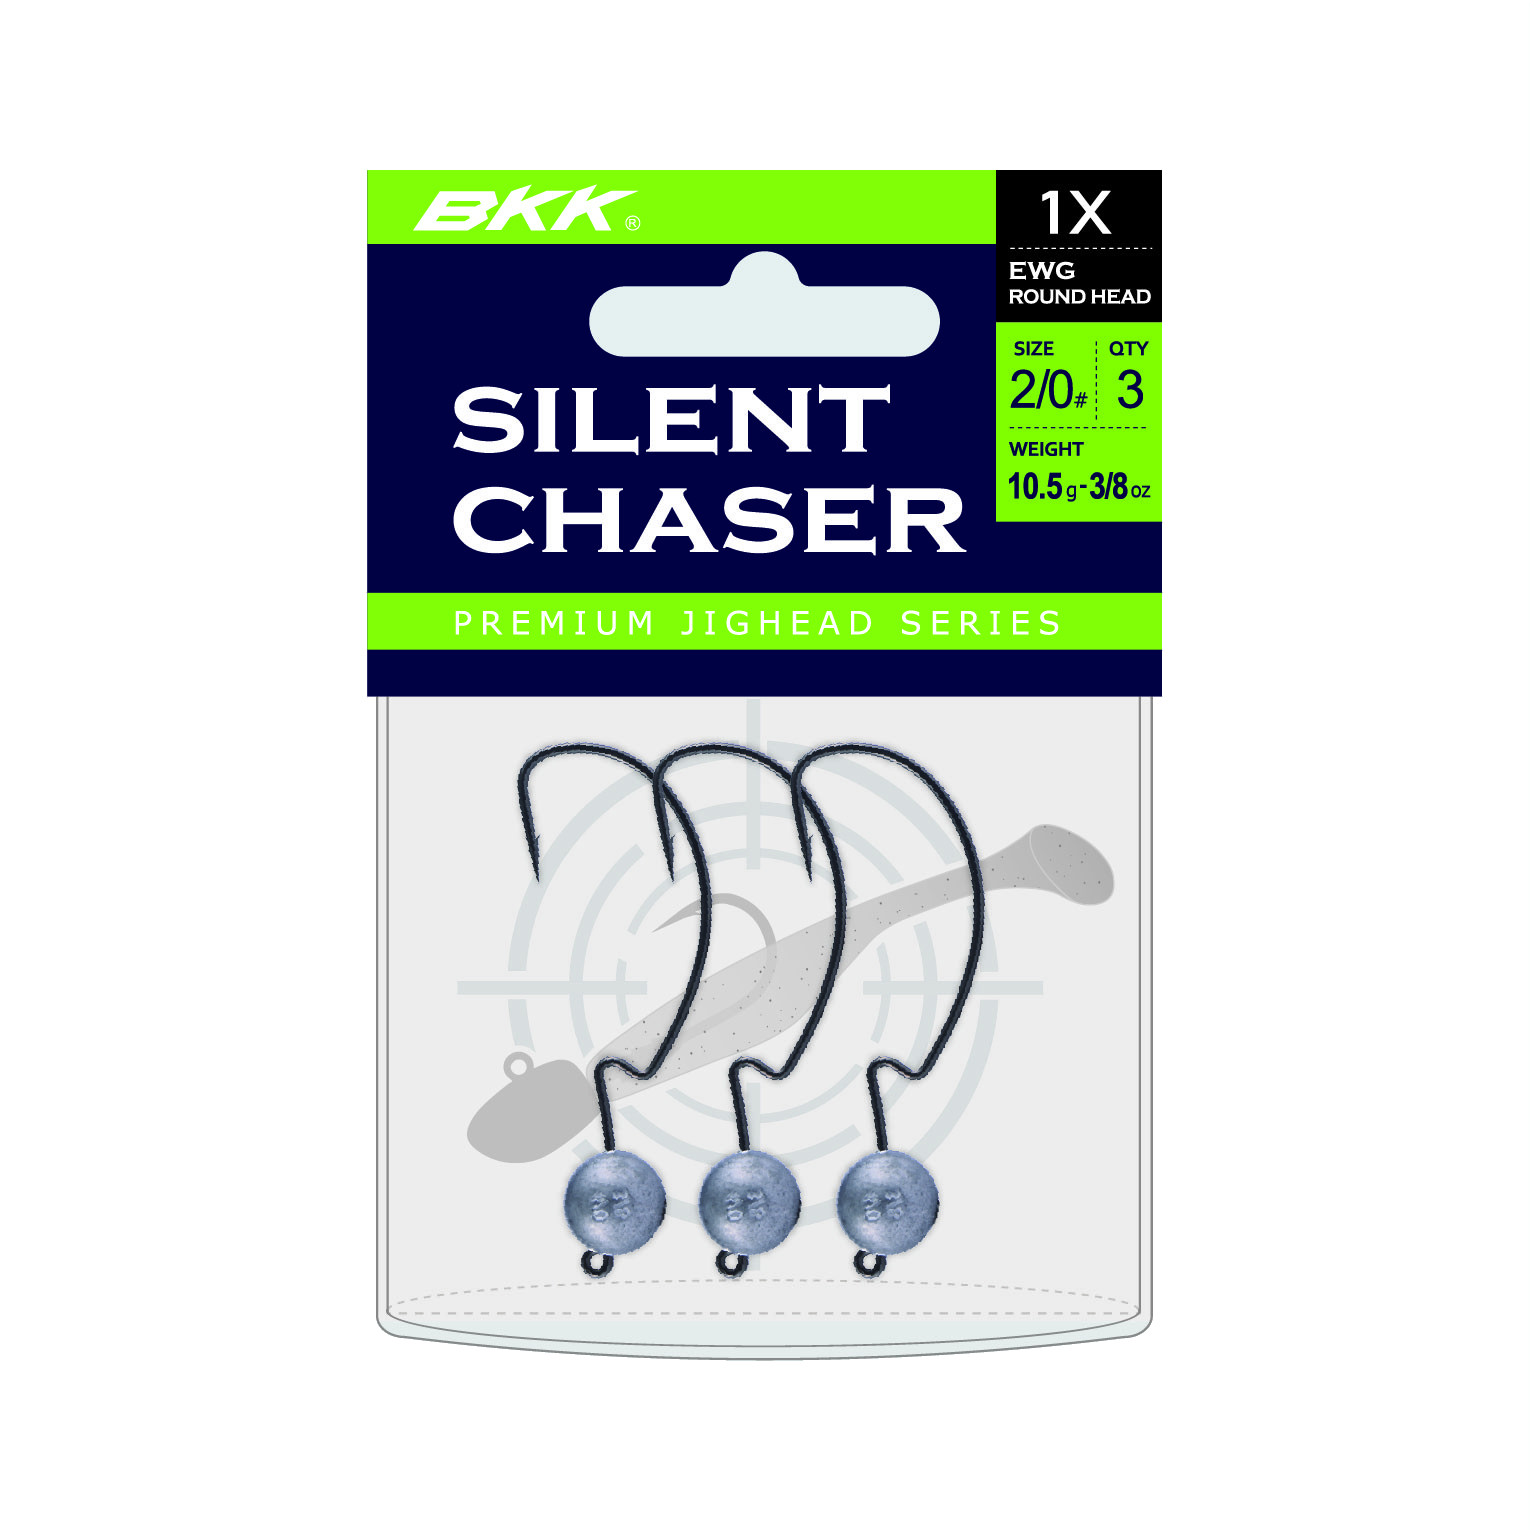 BKK Silent Chaser 1X EWG Round Head Loodkop #1